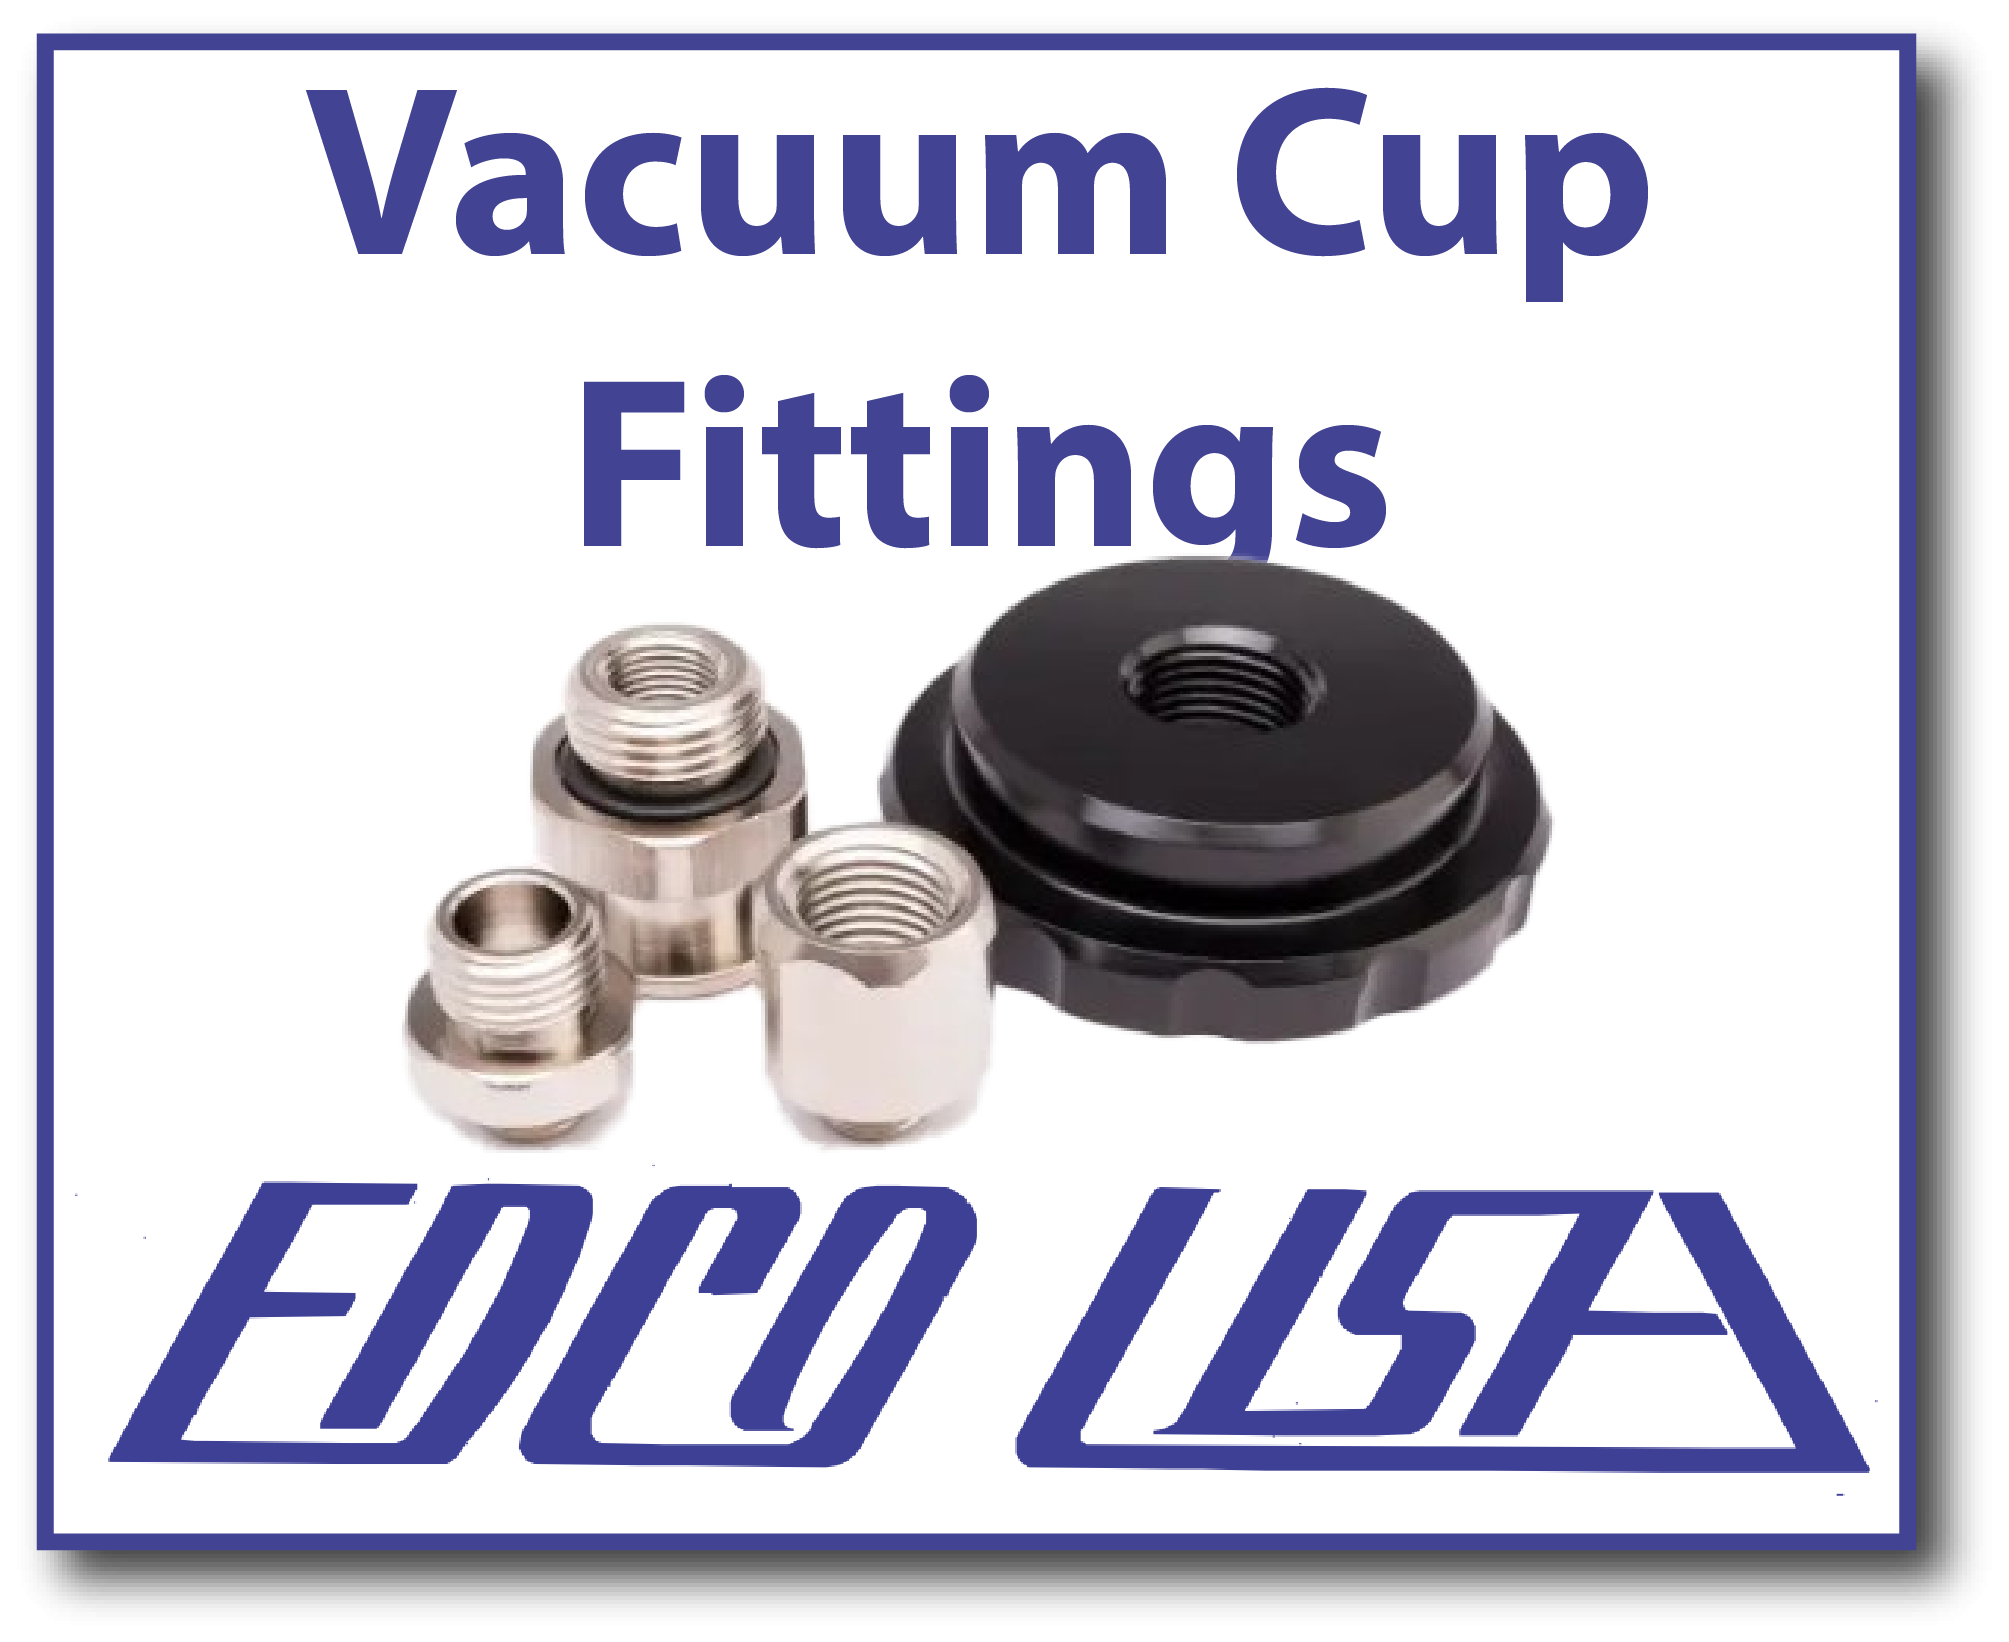 Edco Vacuum Cup Fittings